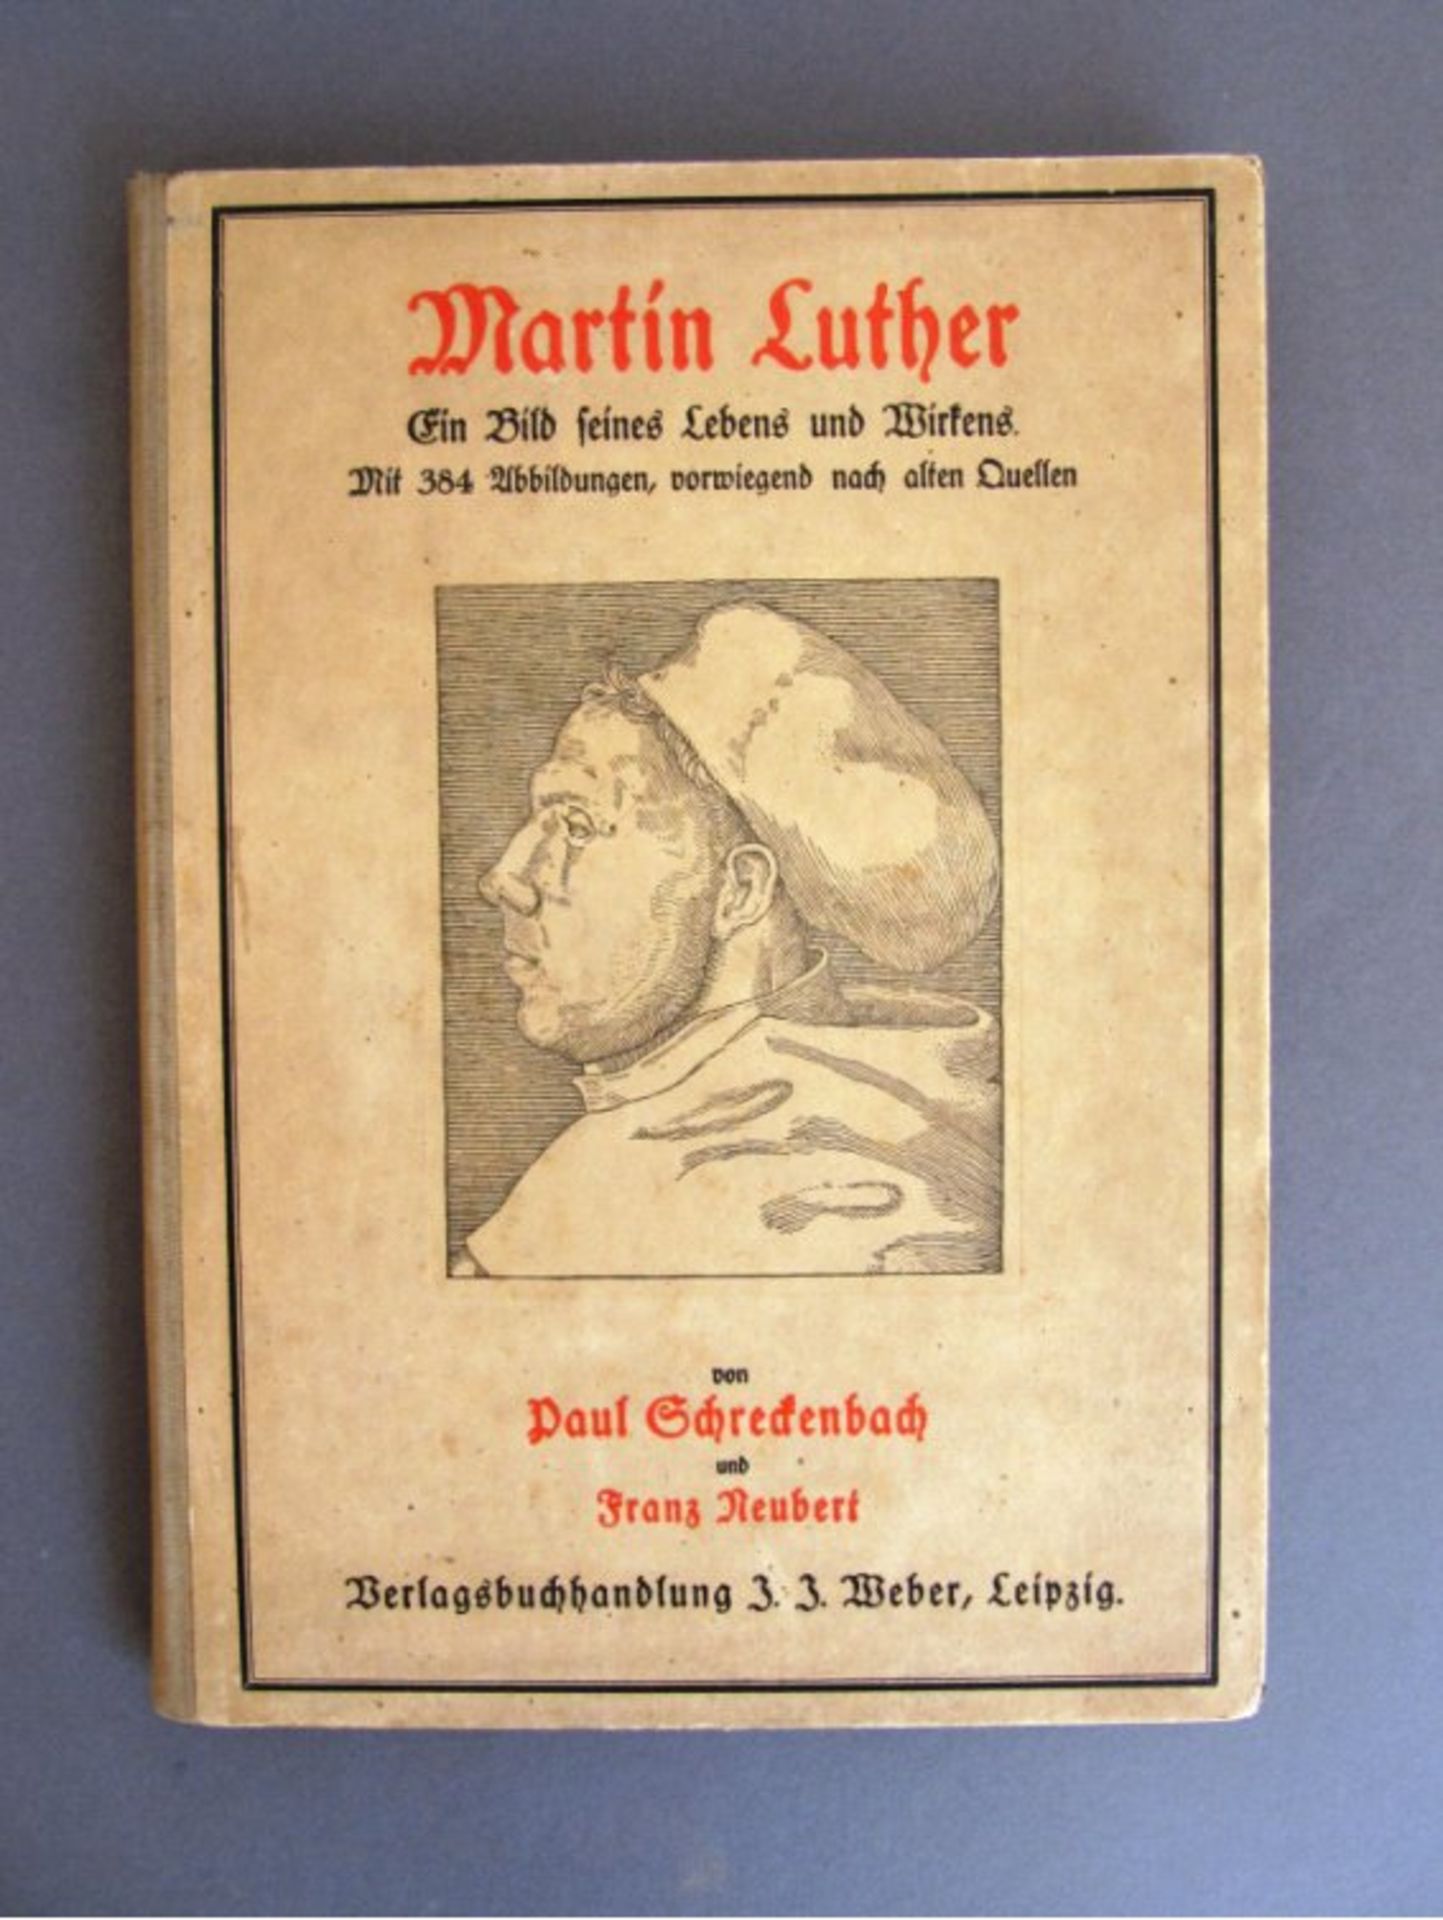 Martin Luther. Ein Bild seines Lebens und WirkensHartkartoneinband mit Leinenrücken, montiertem s/